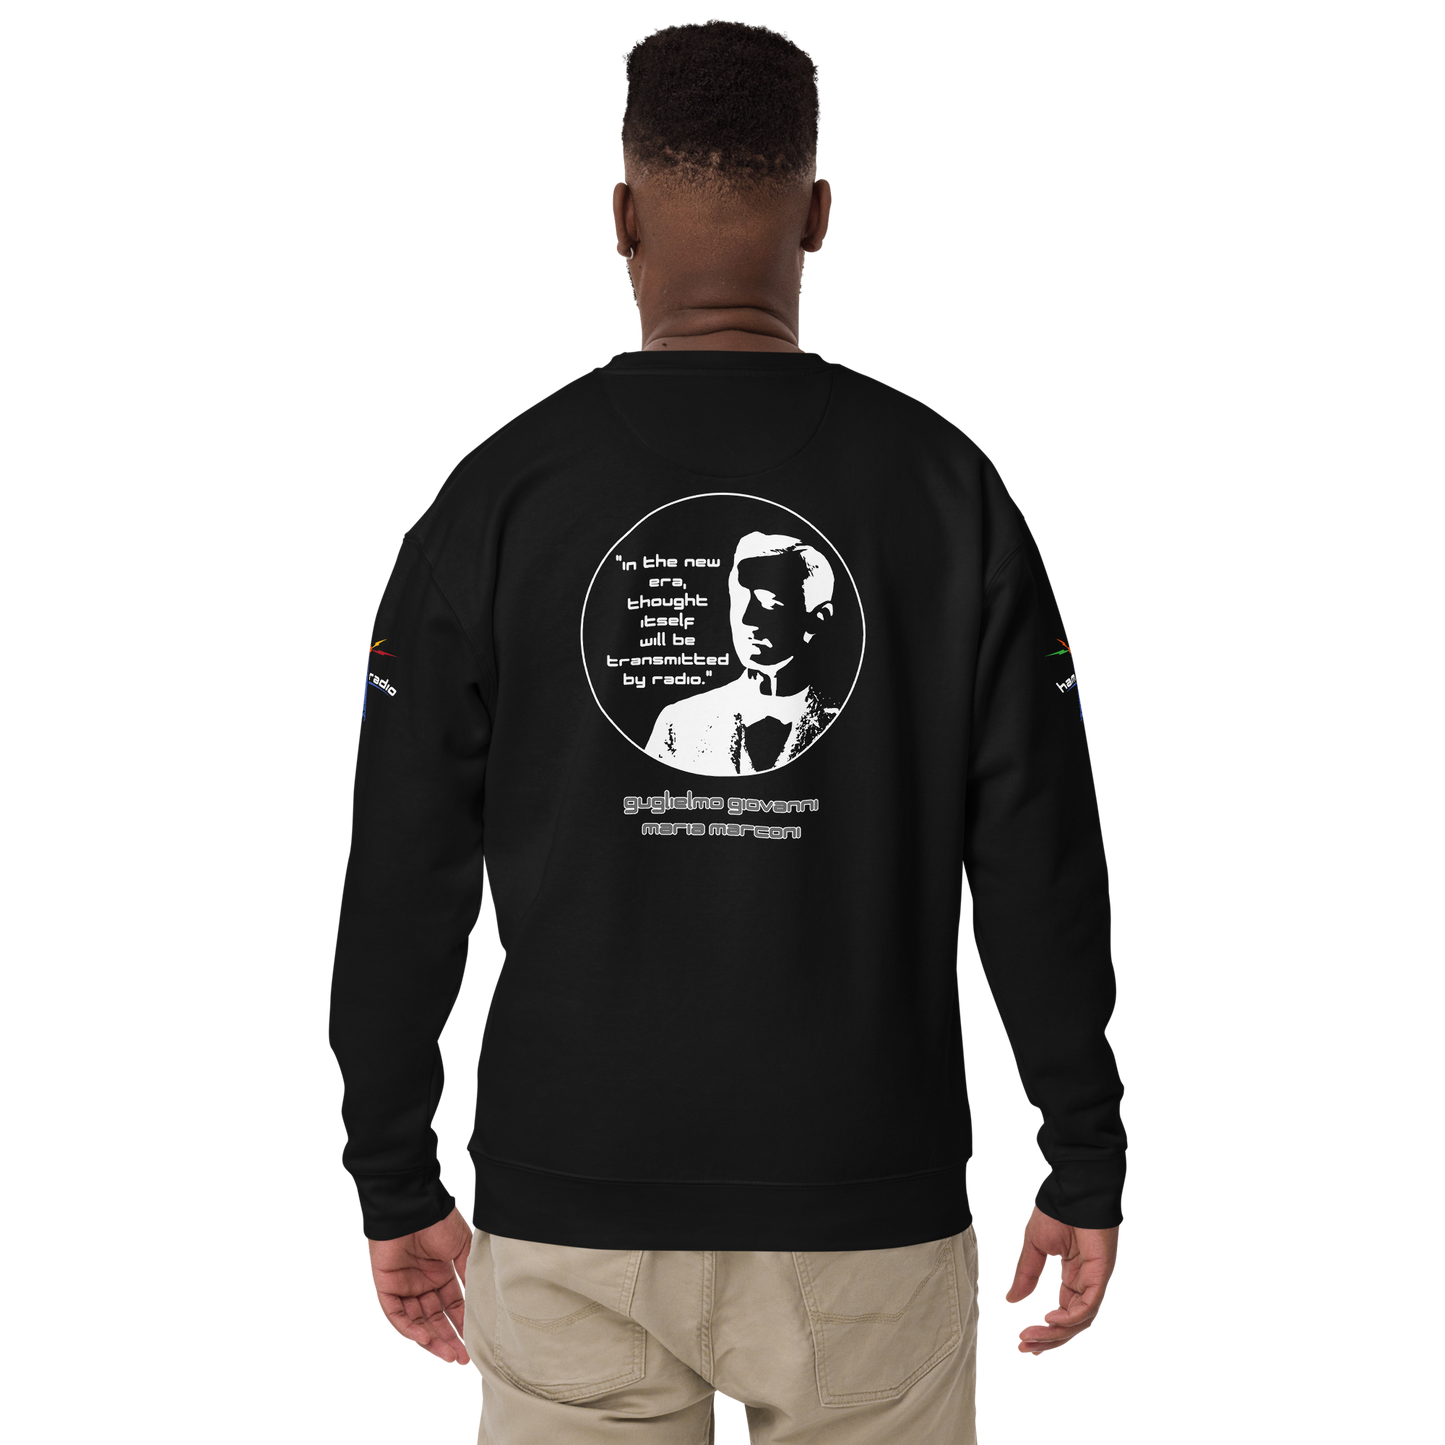 'Marconi' unisex premium sweatshirt (w/free callsign)